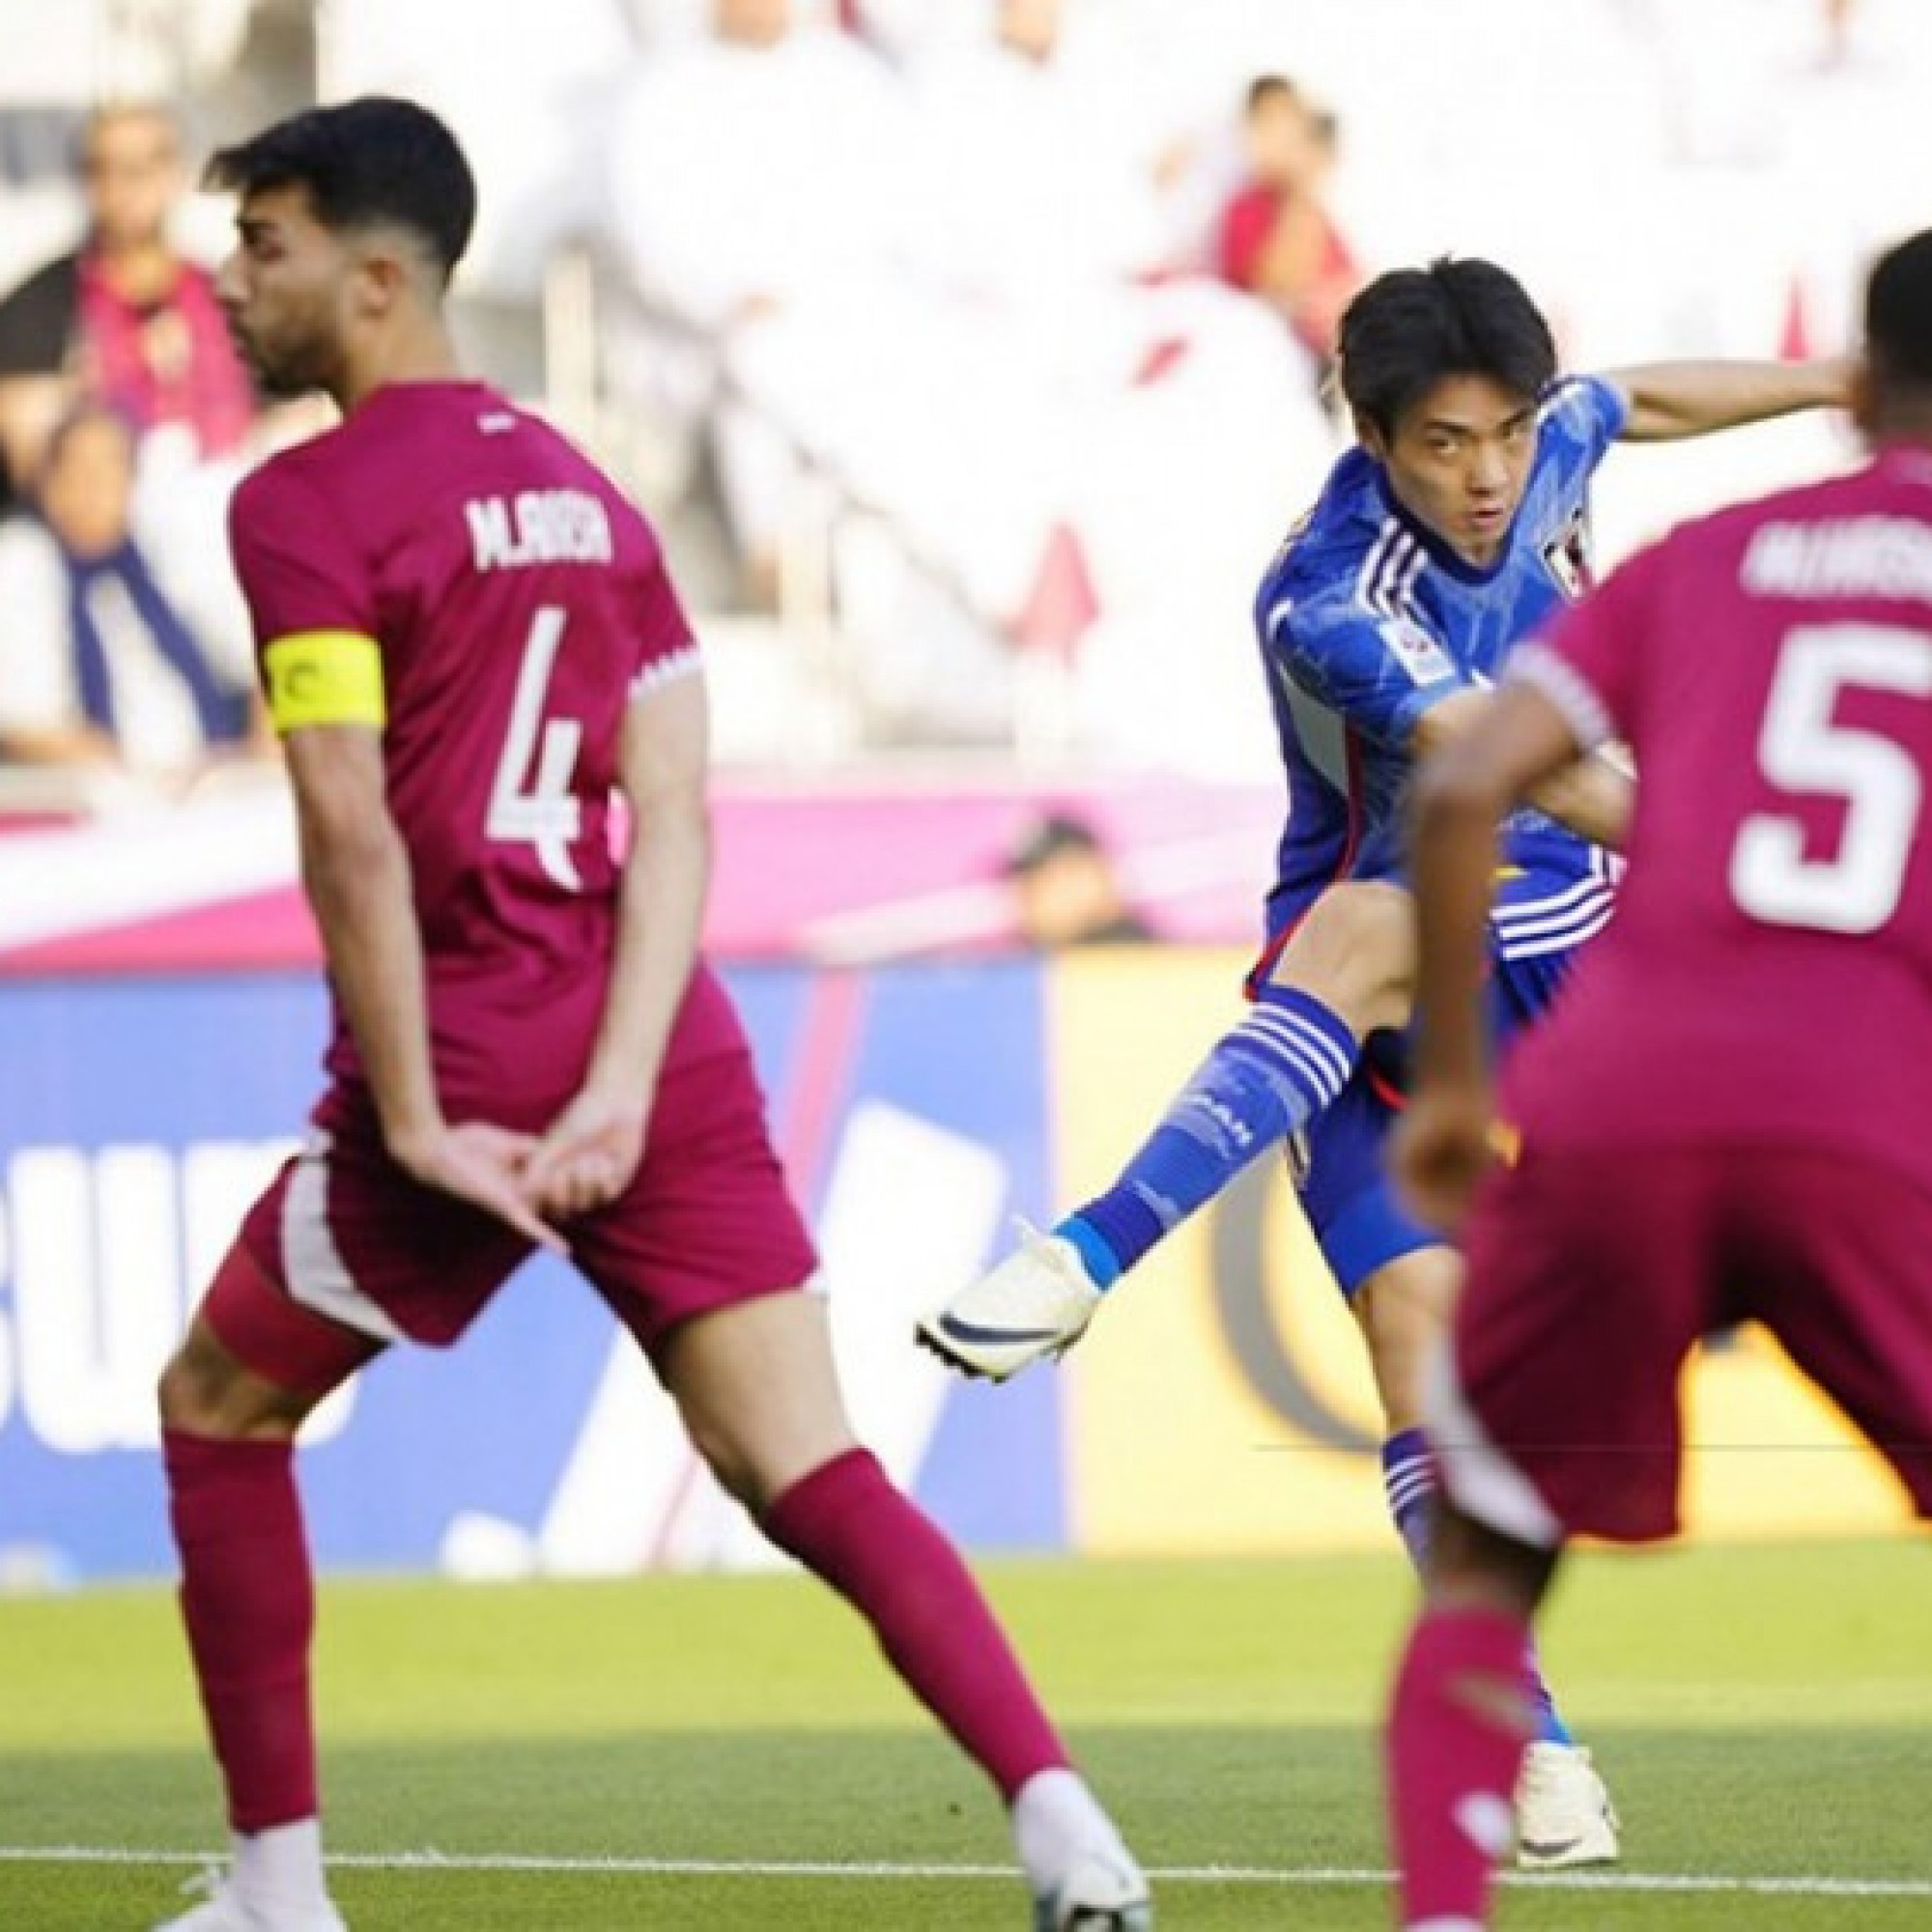  - Trực tiếp bóng đá U23 Qatar - U23 Nhật Bản: Chủ nhà dẫn ngược "Samurai xanh" (U23 châu Á)